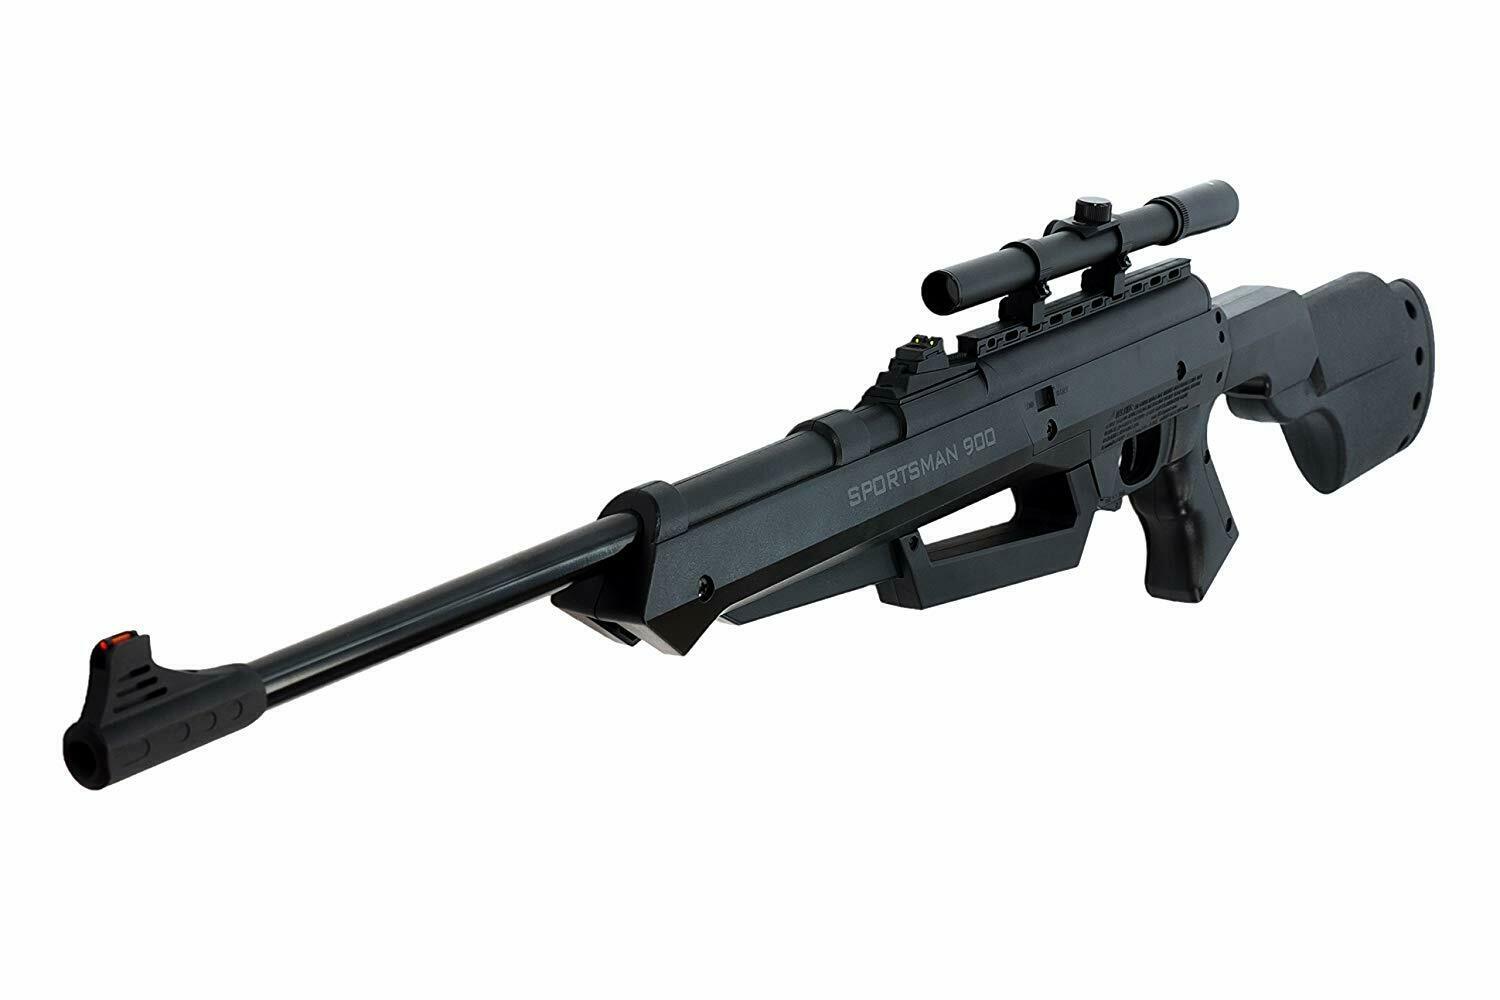 Bear River Sportsman 900 Air Rifle Multi-pump .177 Bb/pellet Gun With Scope